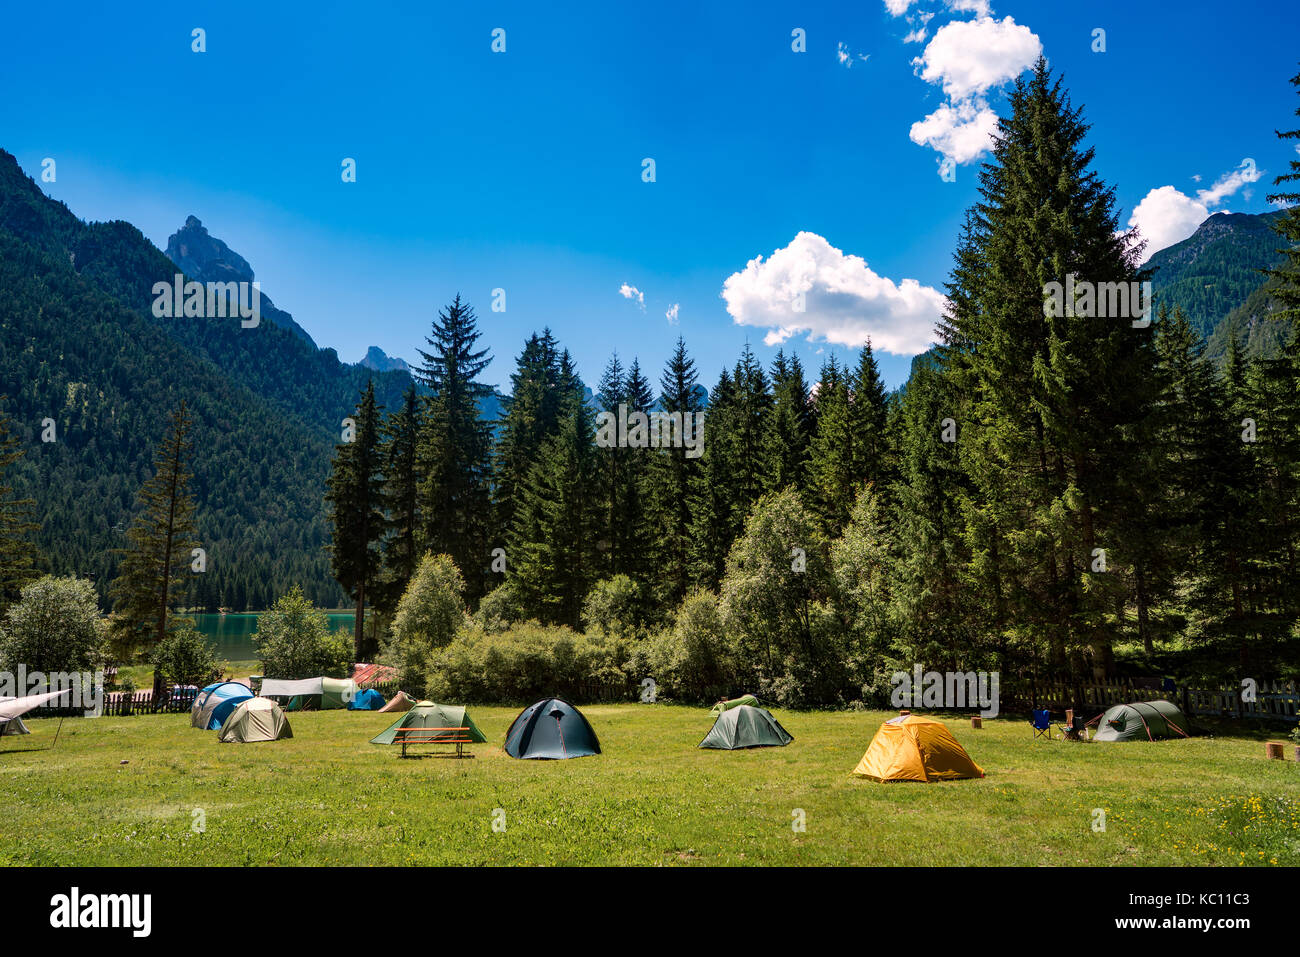 Campeggio sulle rive del lago. Il lago di Dobbiaco nelle Dolomiti, la bellissima natura italia paesaggio naturale delle Alpi. Foto Stock